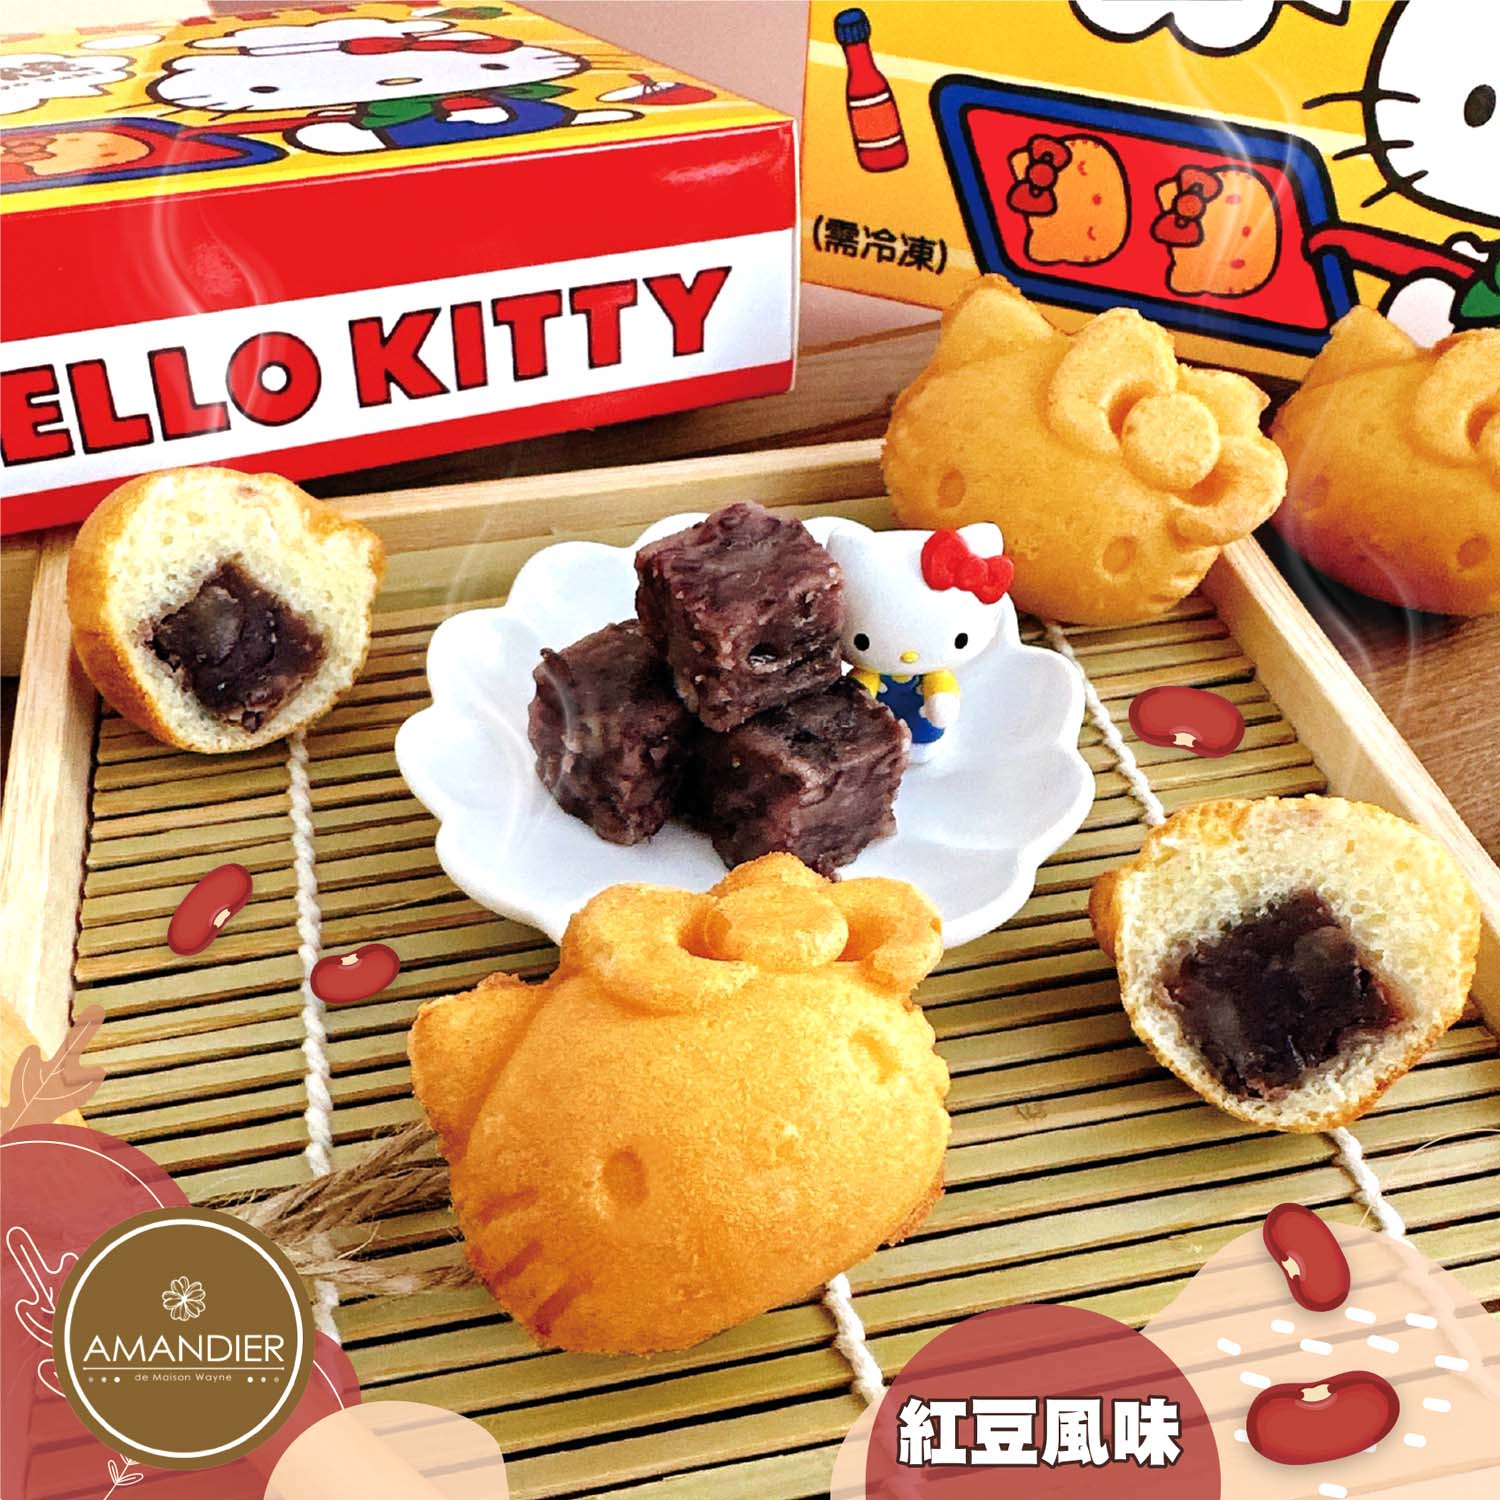 2入含運組【雅蒙蒂】Hello Kitty mini燒(卡士達/紅豆風味)